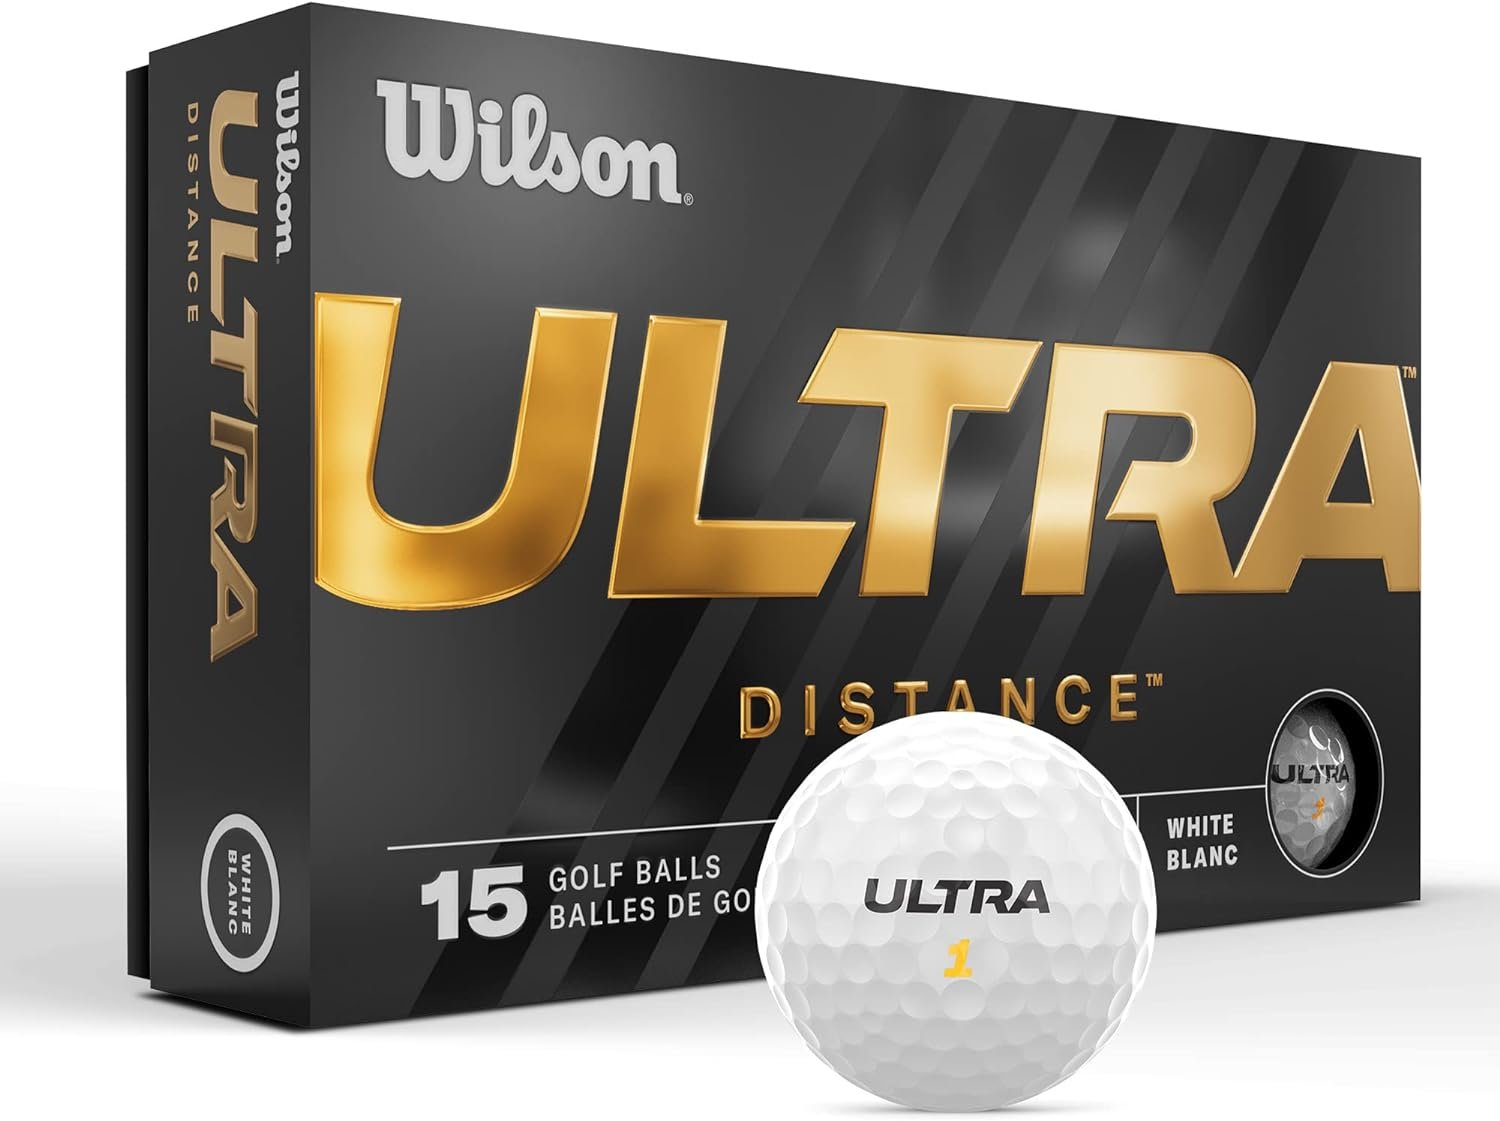 Wilson 23 Ultra Golf Balls - 15 Pack